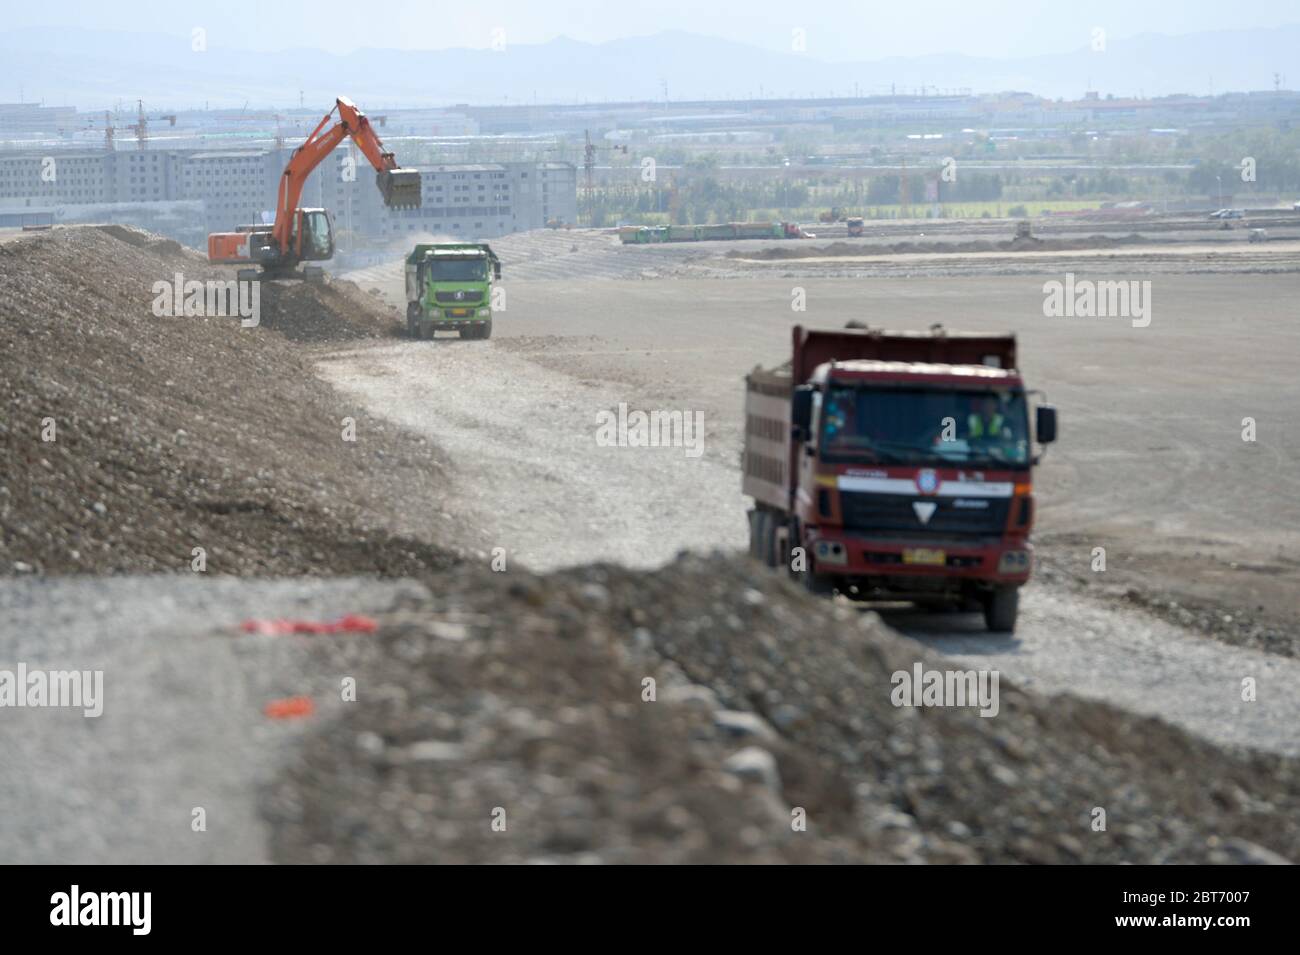 Urumqi, la regione autonoma cinese di Xinjiang Uygur. 23 maggio 2020. I camion effettuano lavori di riempimento presso il cantiere per il progetto di espansione dell'aeroporto internazionale di Urumqi Diwopu a Urumqi, regione autonoma Xinjiang Uygur, nella Cina nord-occidentale, il 23 maggio 2020. Il progetto comprende un nuovo terminal di 500,000 metri quadrati, due piste di oltre 3,000 metri, un centro di trasporto integrato fino a 92,700 metri quadrati, un parcheggio di oltre 250,000 metri quadri e attrezzature ausiliarie. Il progetto dovrebbe essere completato entro il 2023. Credit: Ding Lei/Xinhua/Alamy Live News Foto Stock